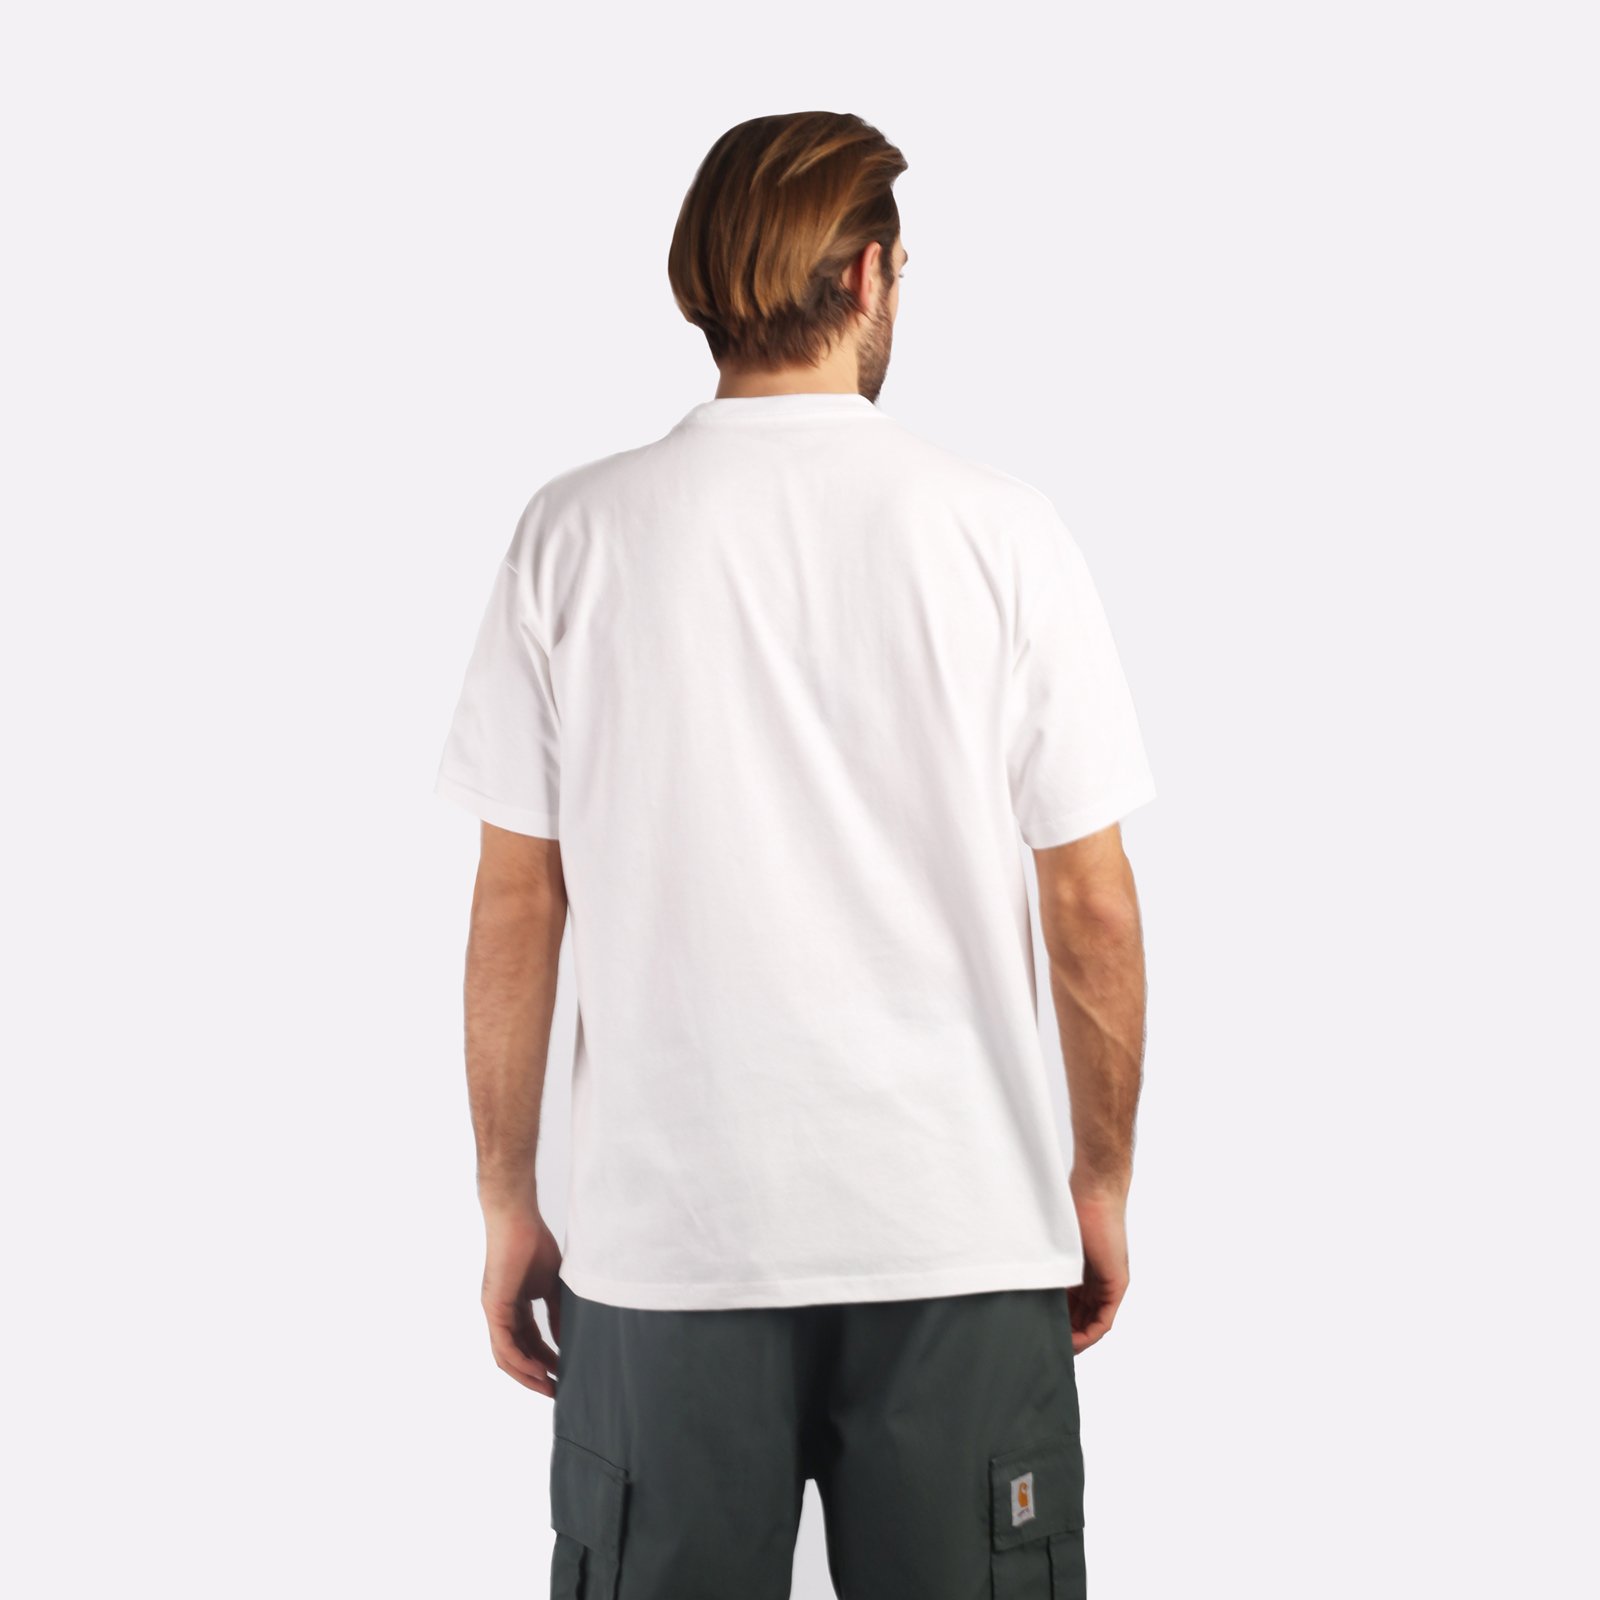 мужская футболка Carhartt WIP S/S Onyx T-Shirt  (I032875-white/black)  - цена, описание, фото 2